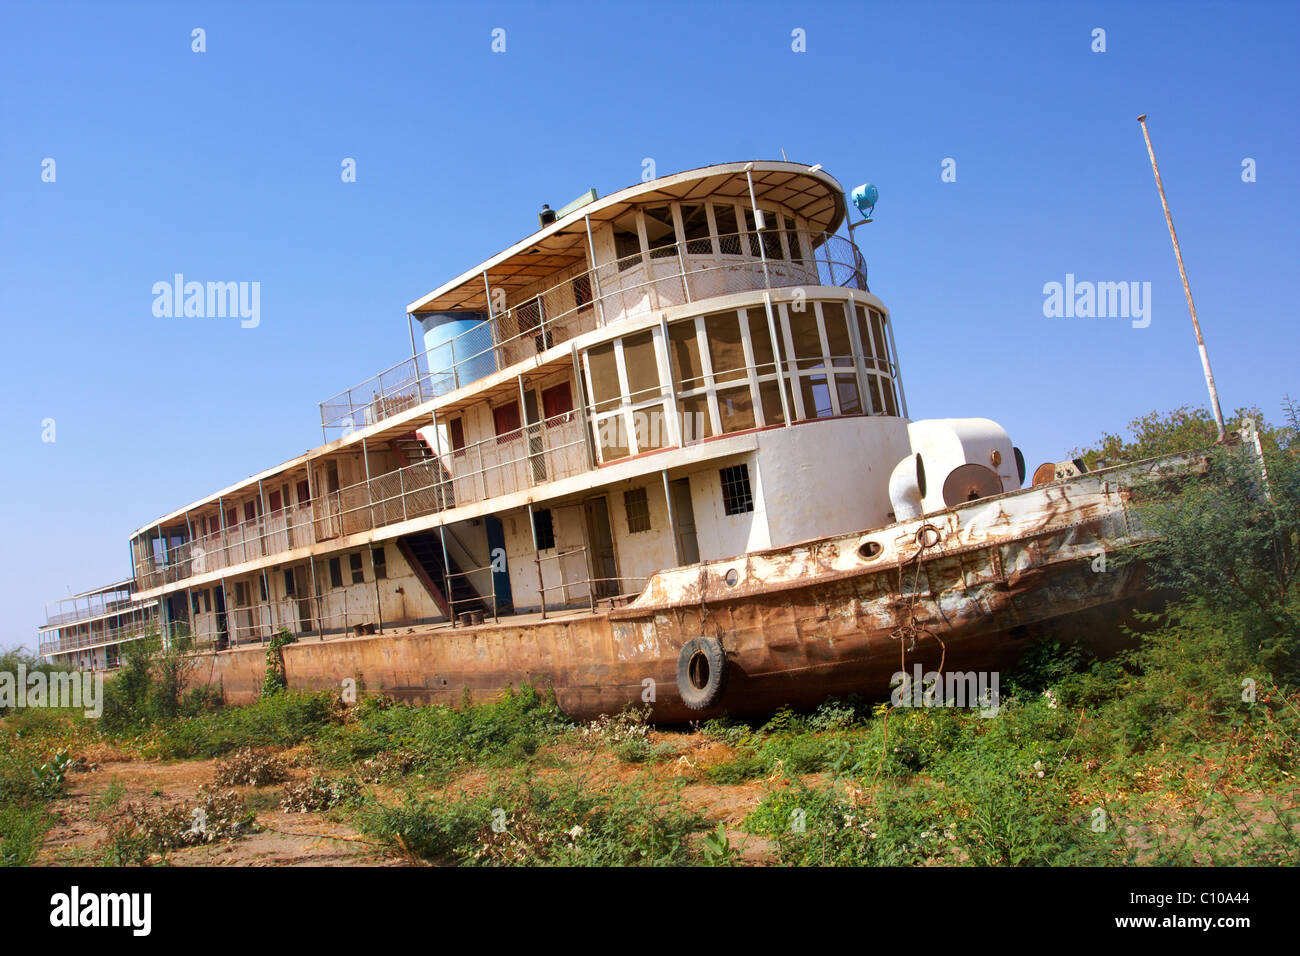 Ein Boot der mittleren Nil Dampfer Flotte, am Ufer des Flusses im Karima,  Sudan aufgegeben Stockfotografie - Alamy